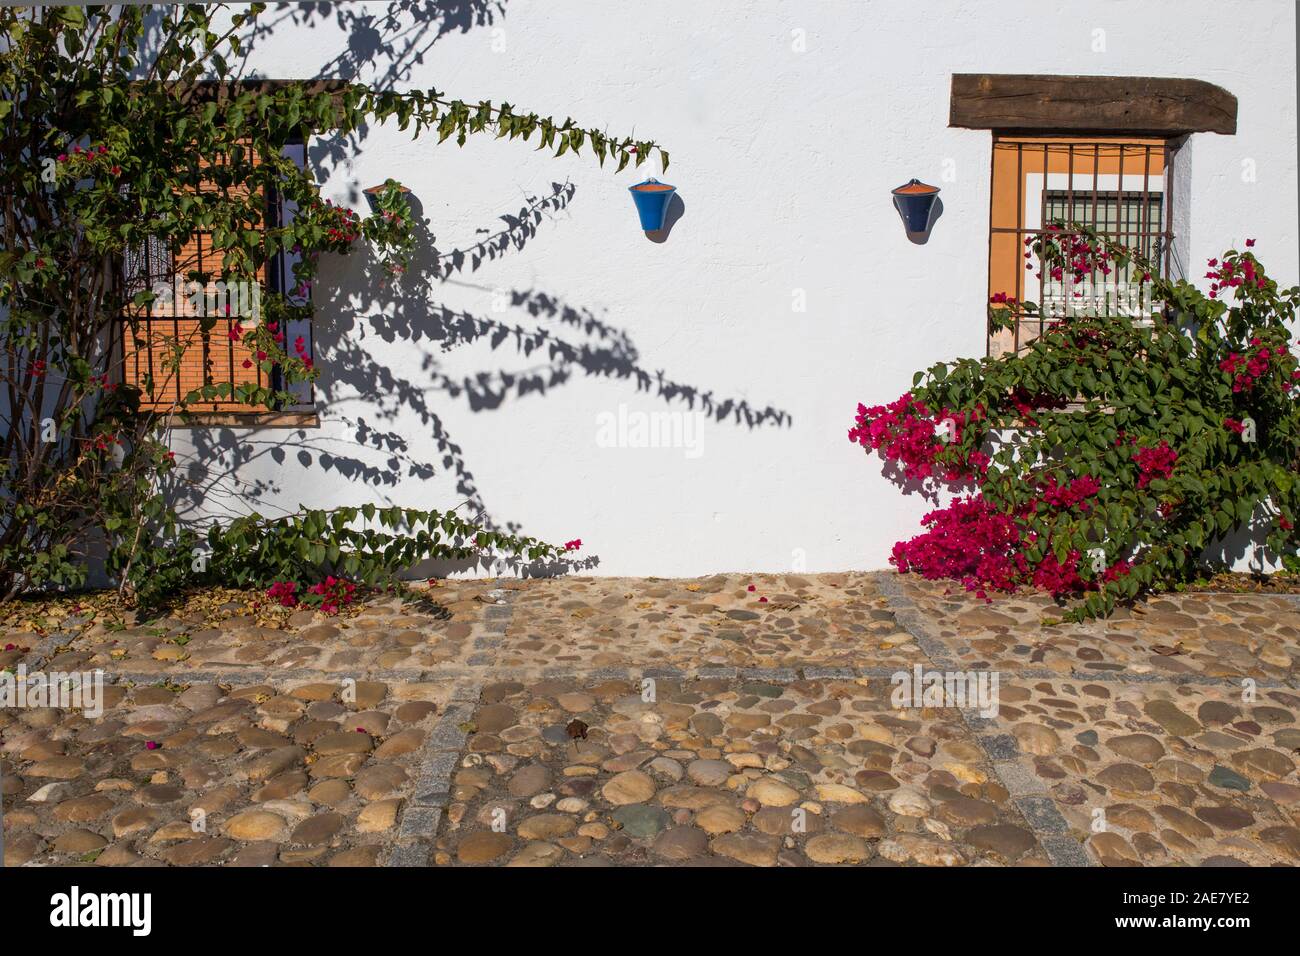 Traditionelle andalusische Architektur mit weiß getünchten Wänden und Kiesel. Fuente Palmera, Cordoba, Spanien. Stockfoto